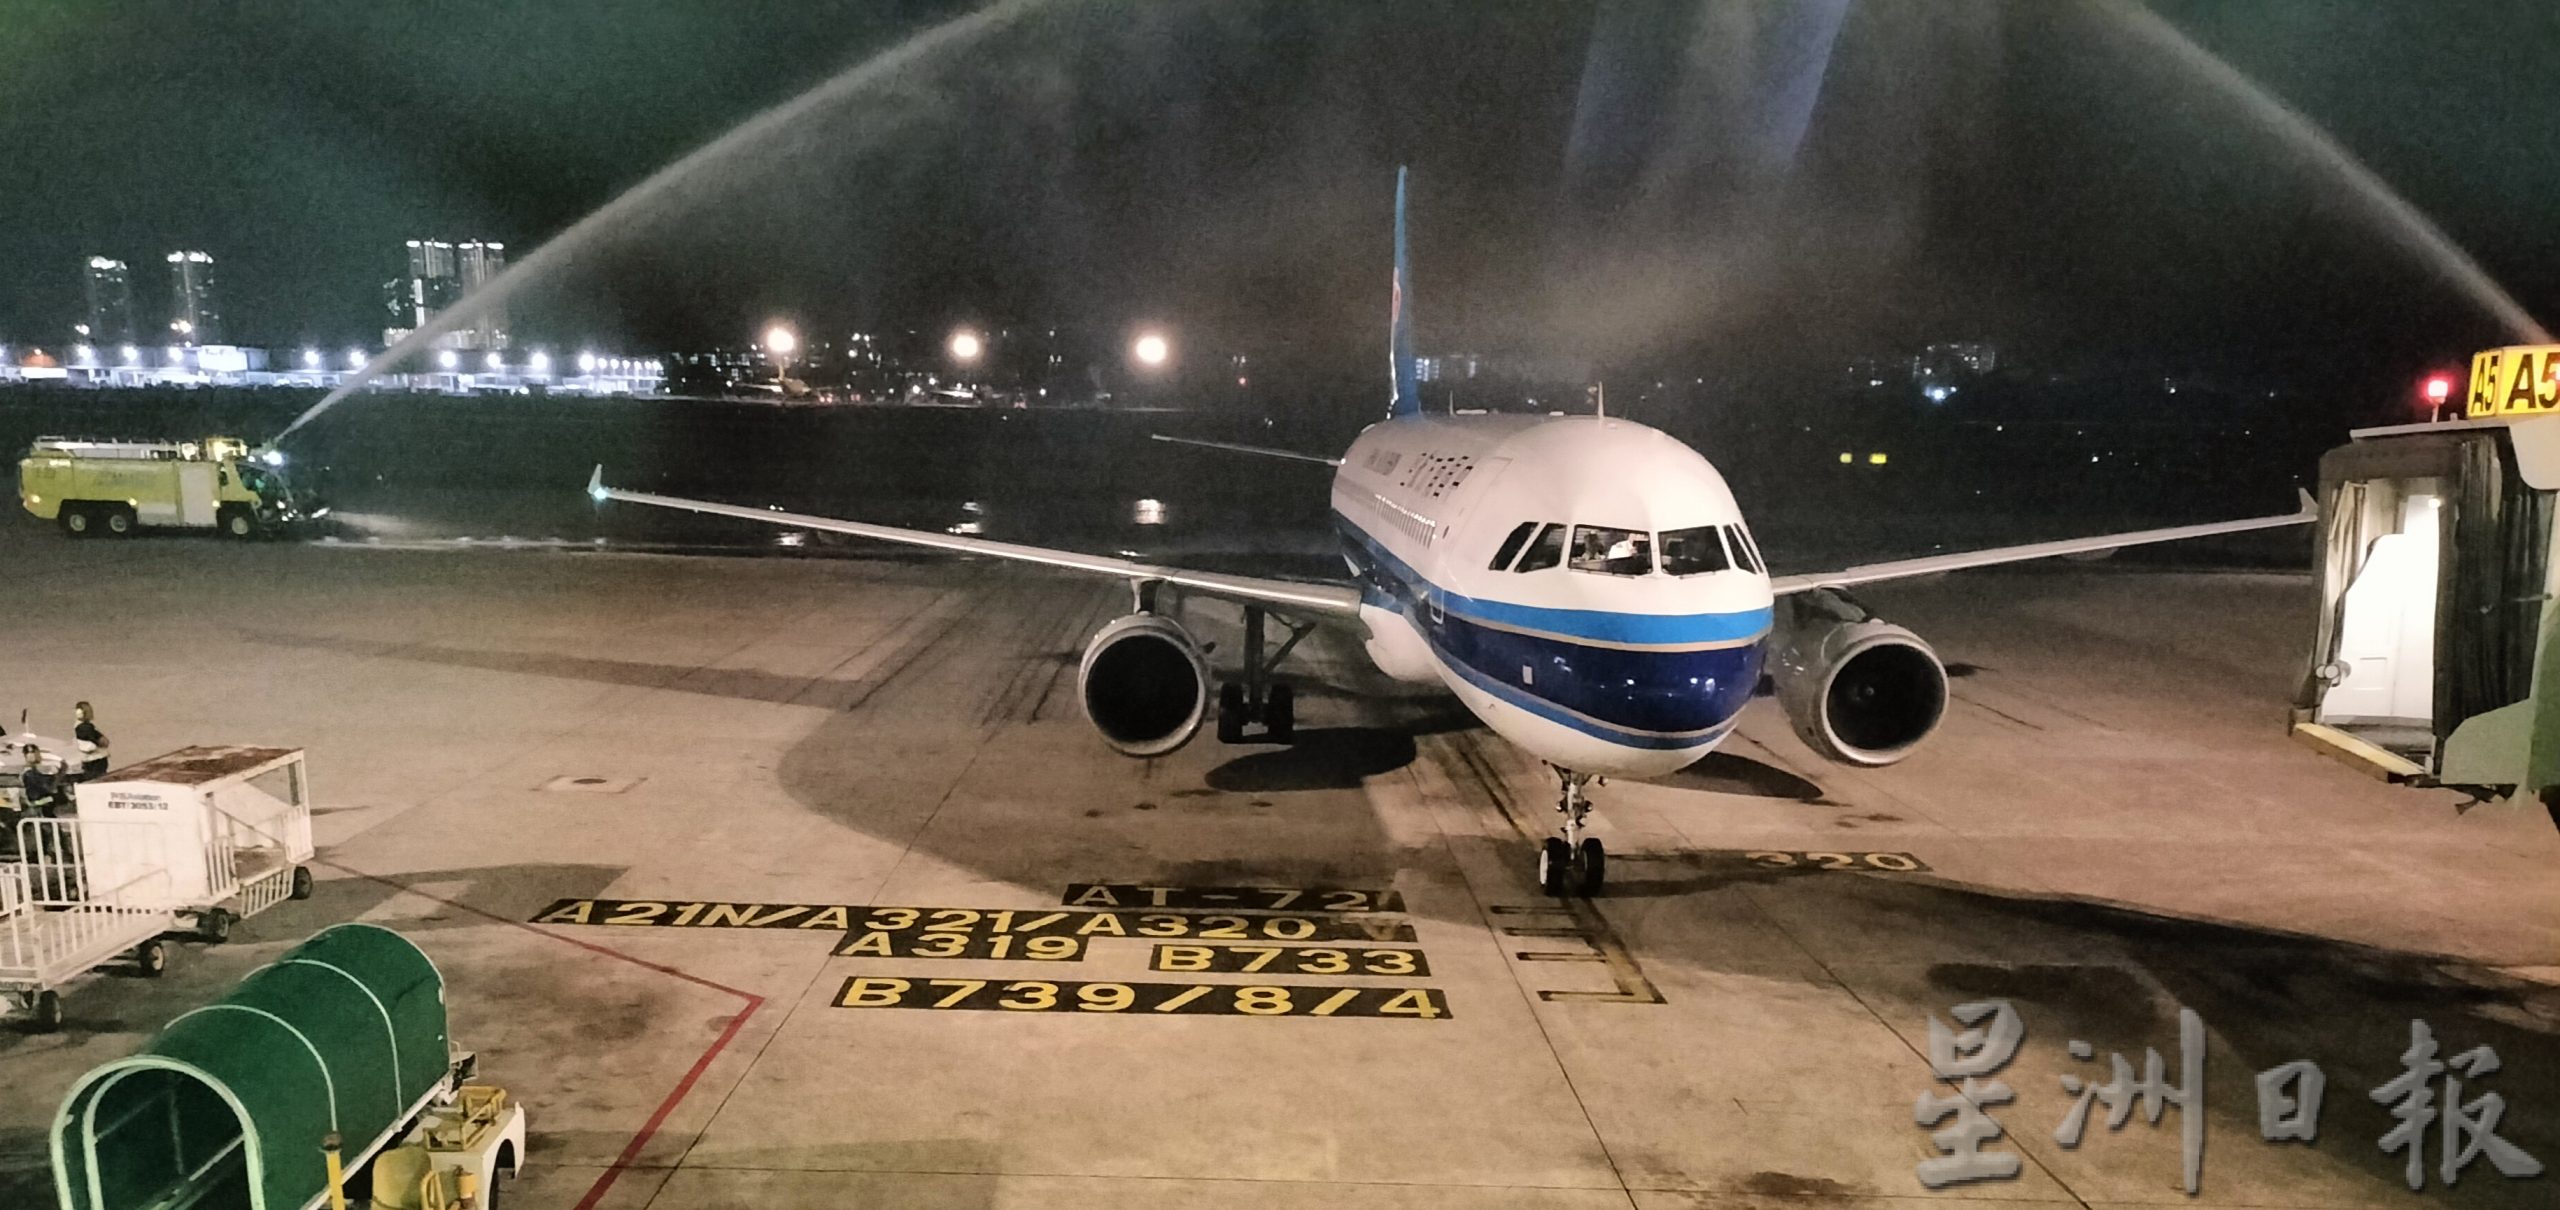 中国南方航空重启 广州往返槟城直飞航班